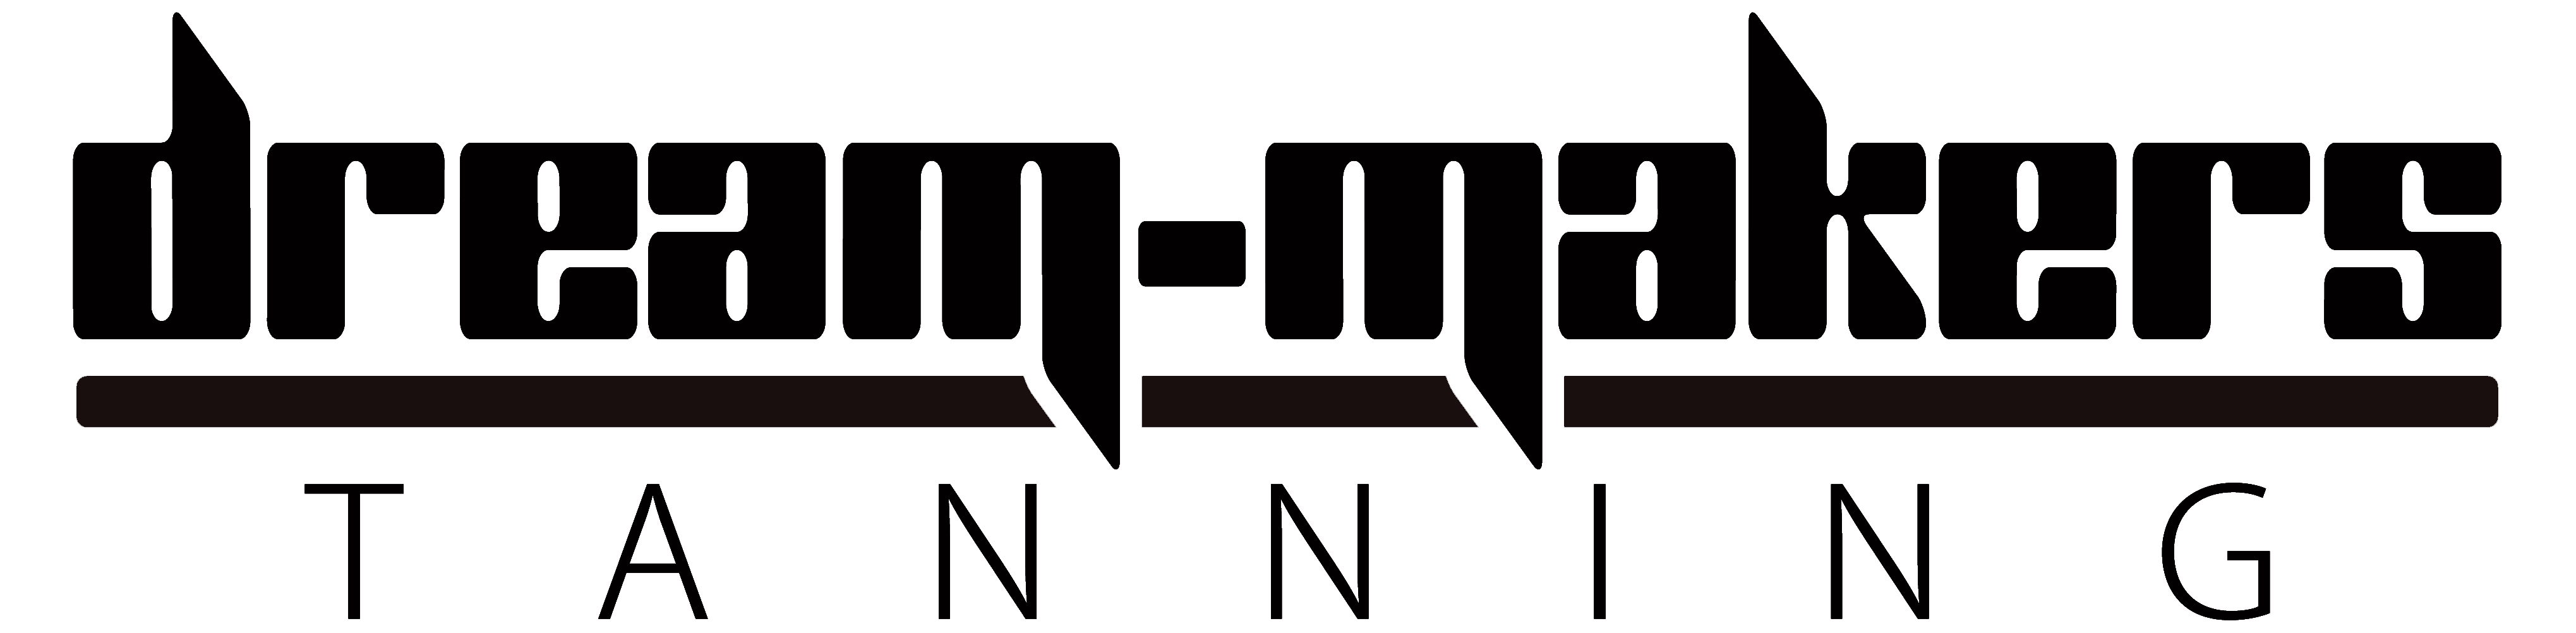 dmt logo